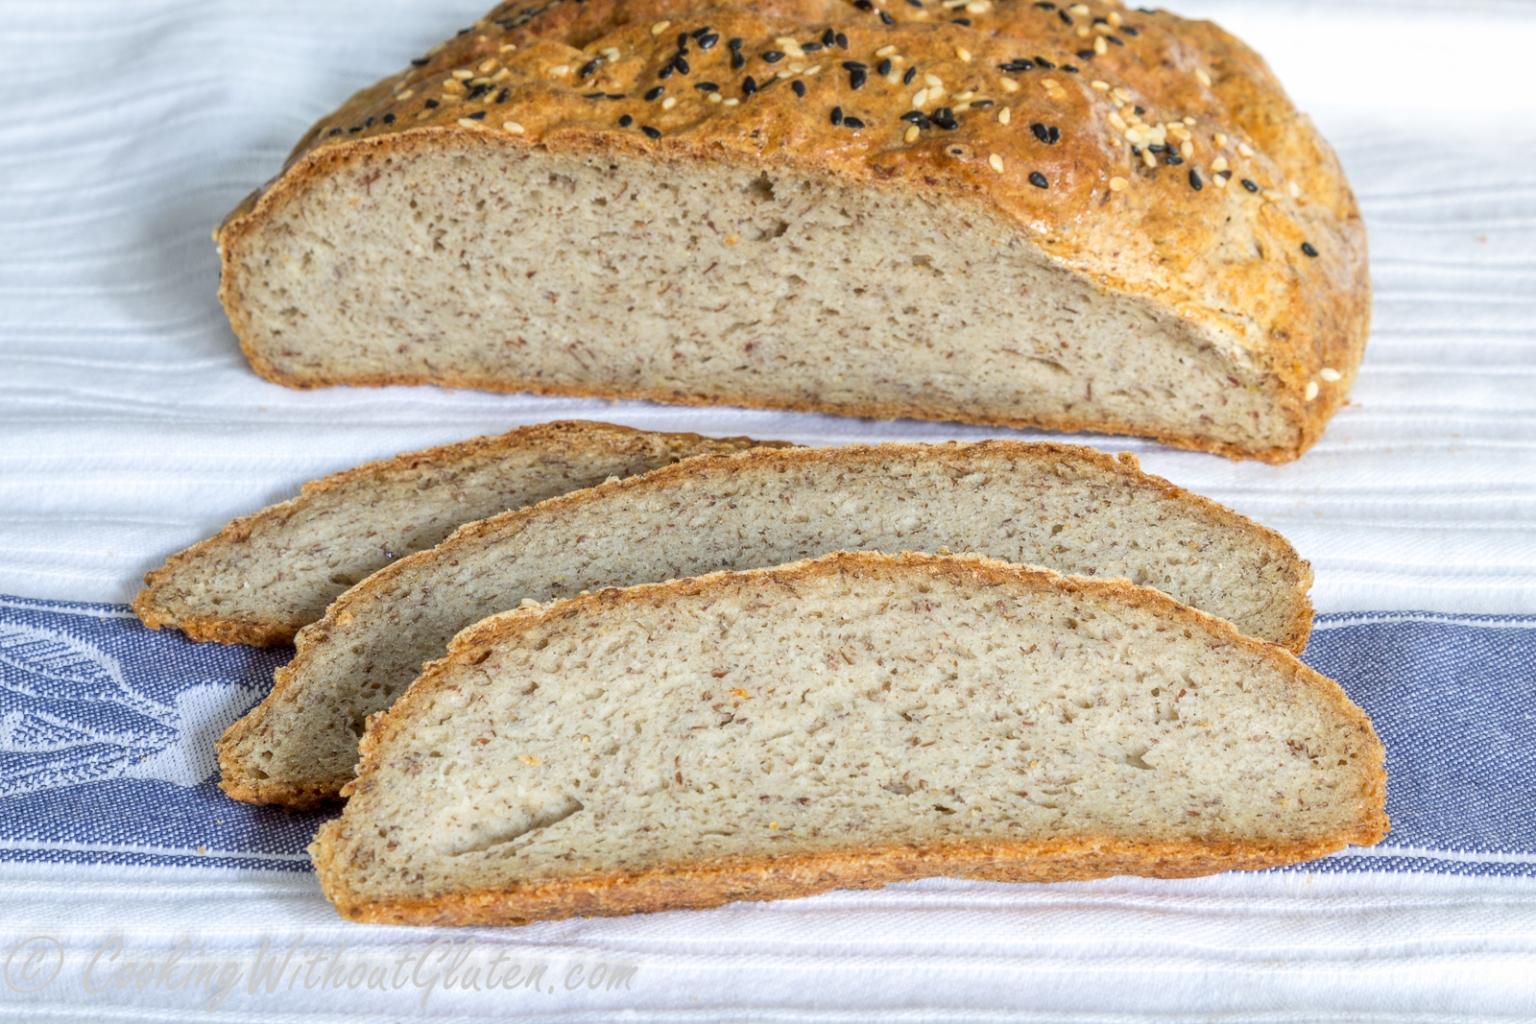 Старые рецепты хлеба без дрожжей